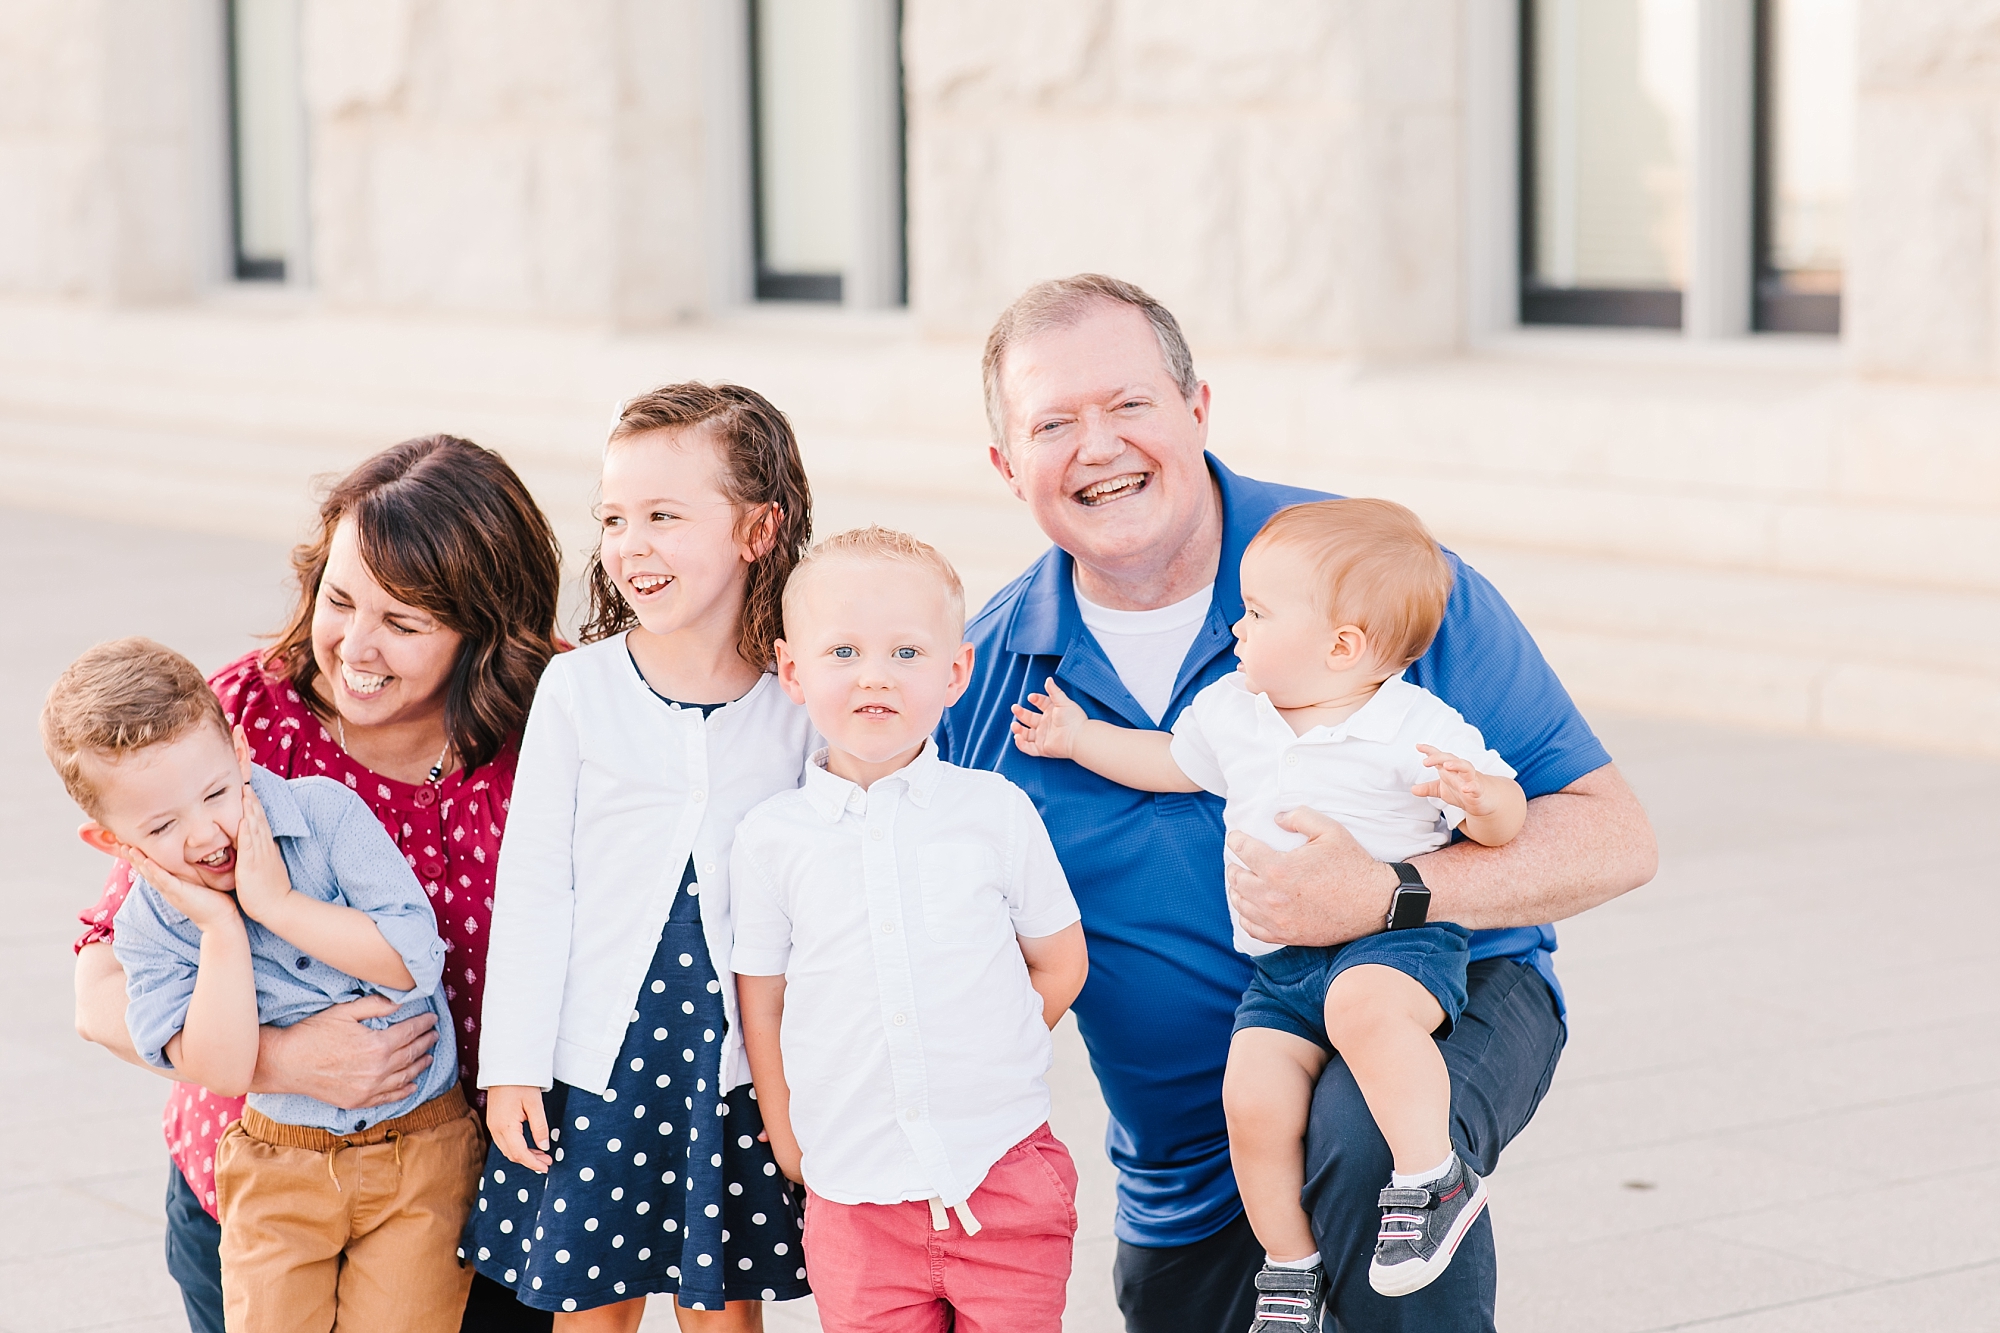 Extended family portrait session in Utah